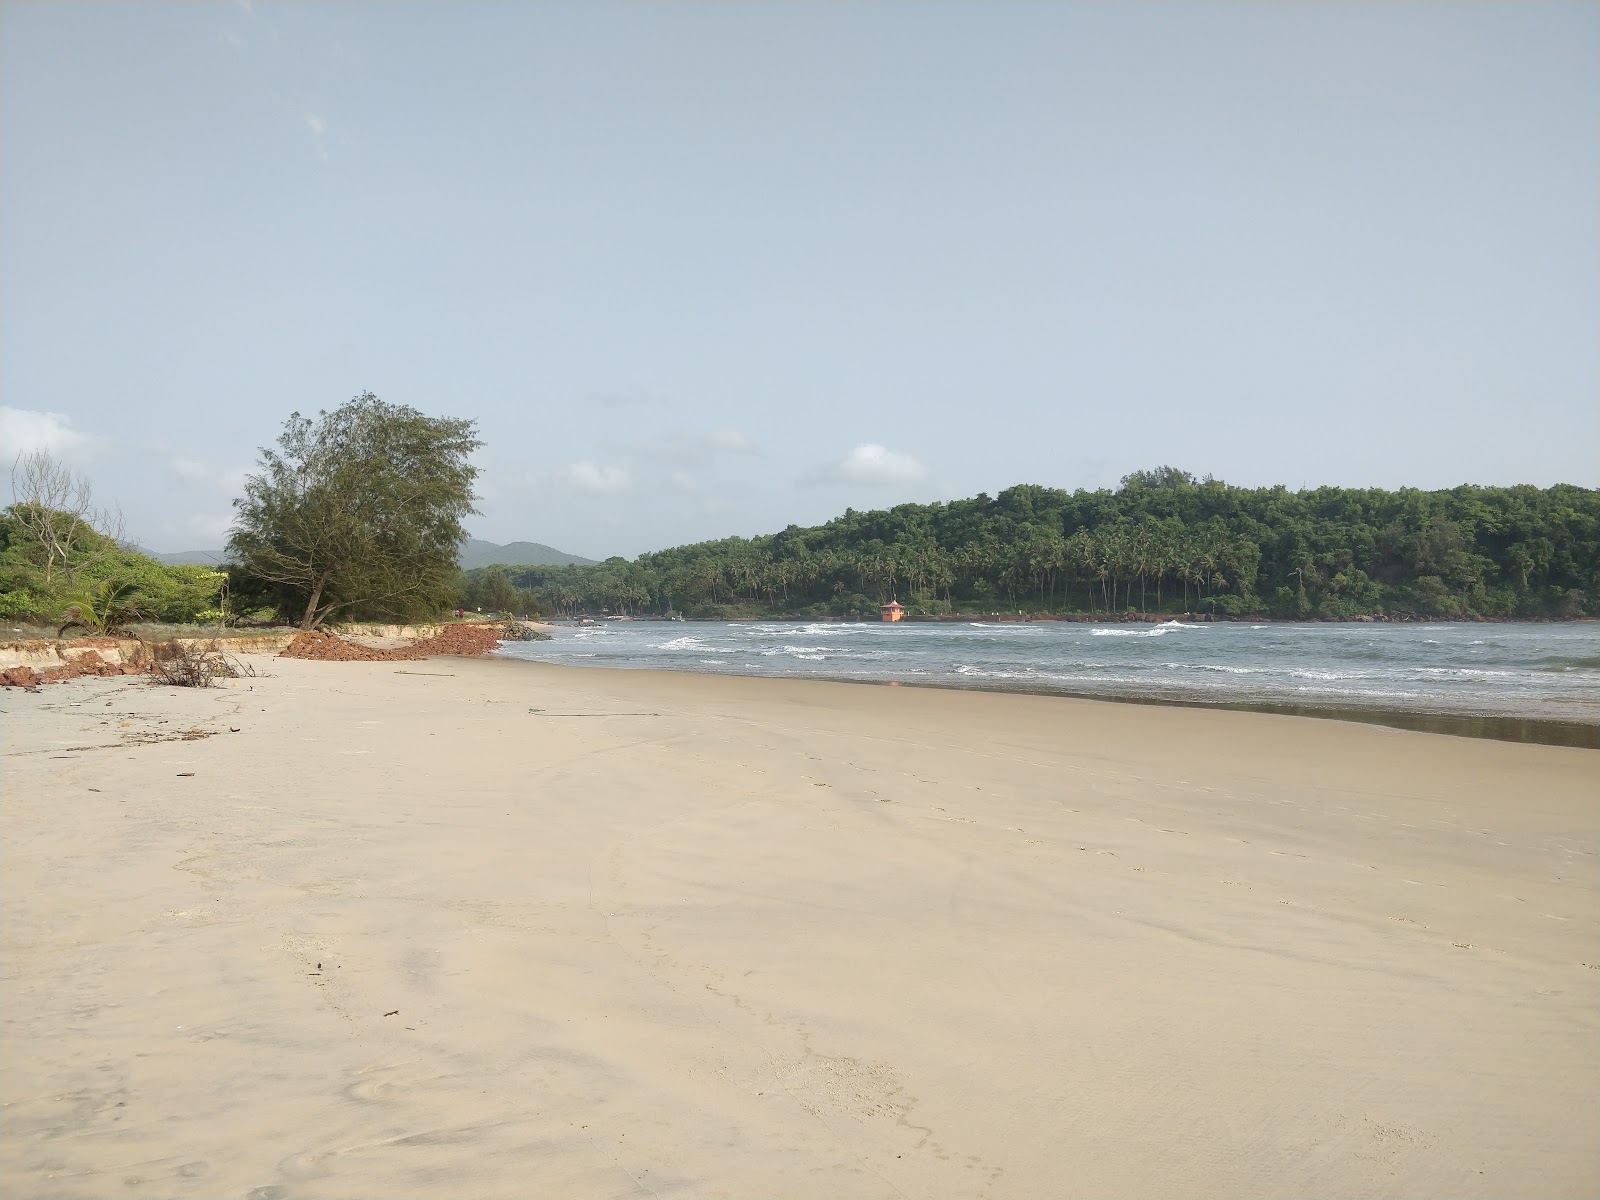 Foto di Betul Beach ubicato in zona naturale